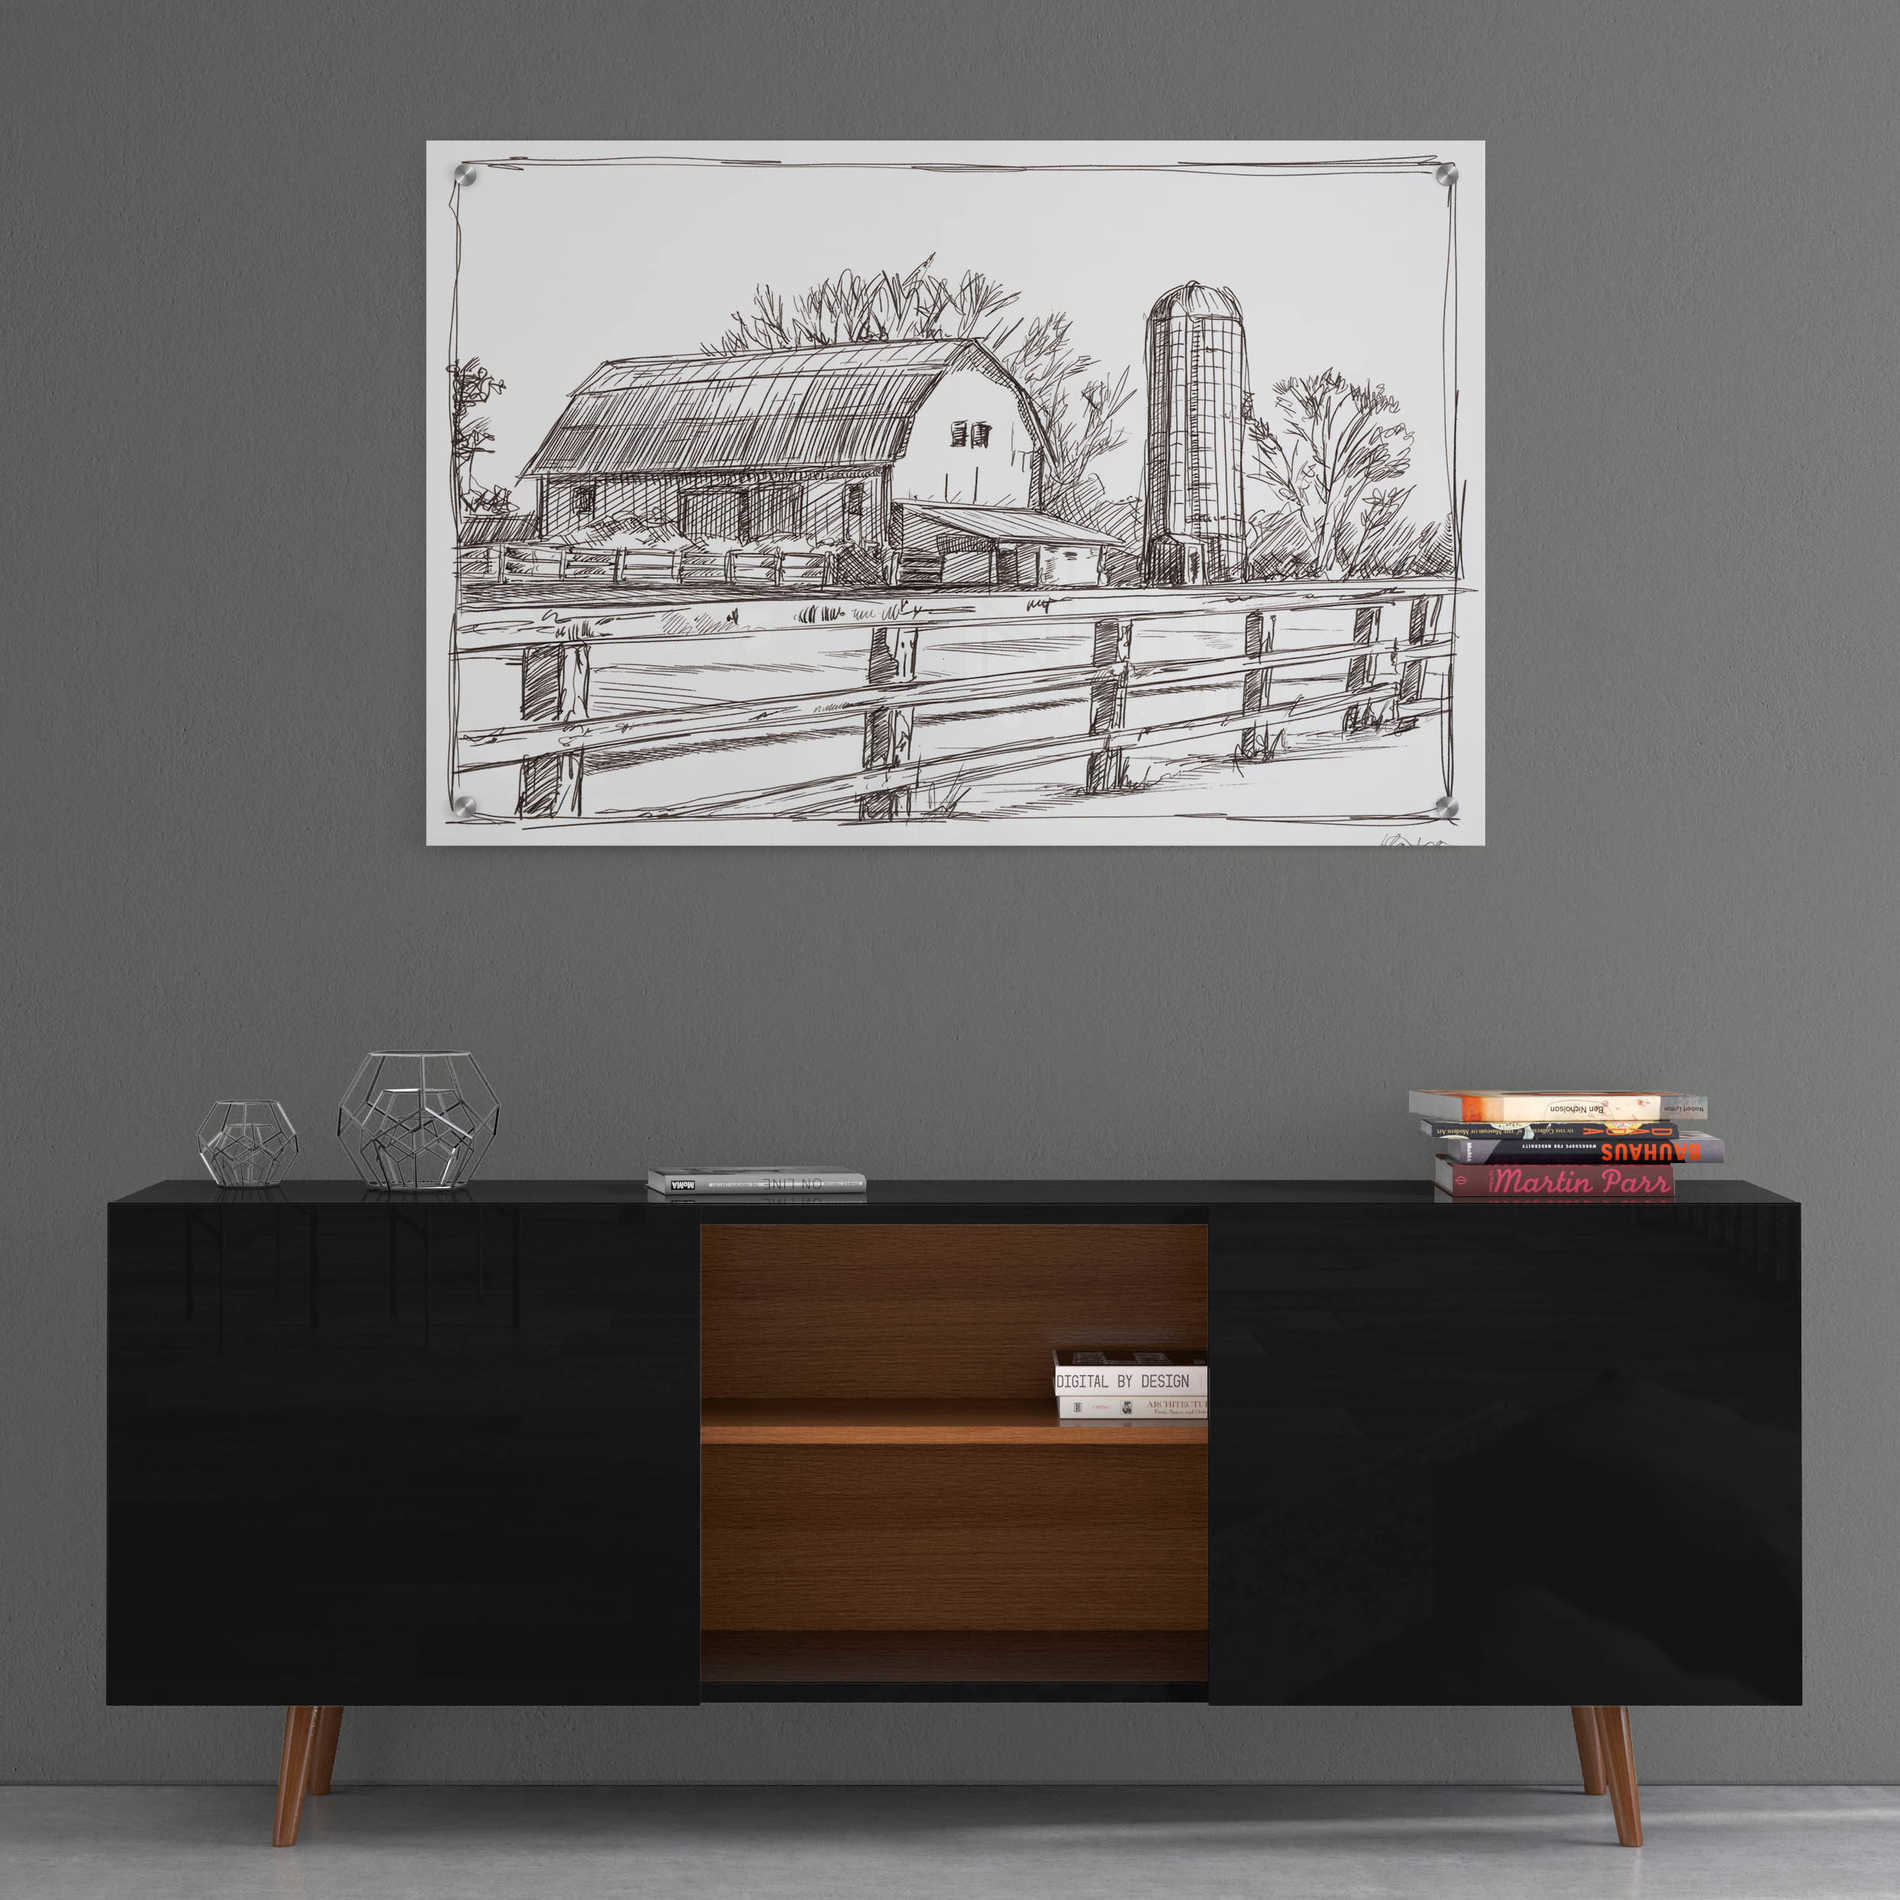 Epic Art 'Farm Sketch I' by Ethan Harper, Acrylic Glass Wall Art,36x24